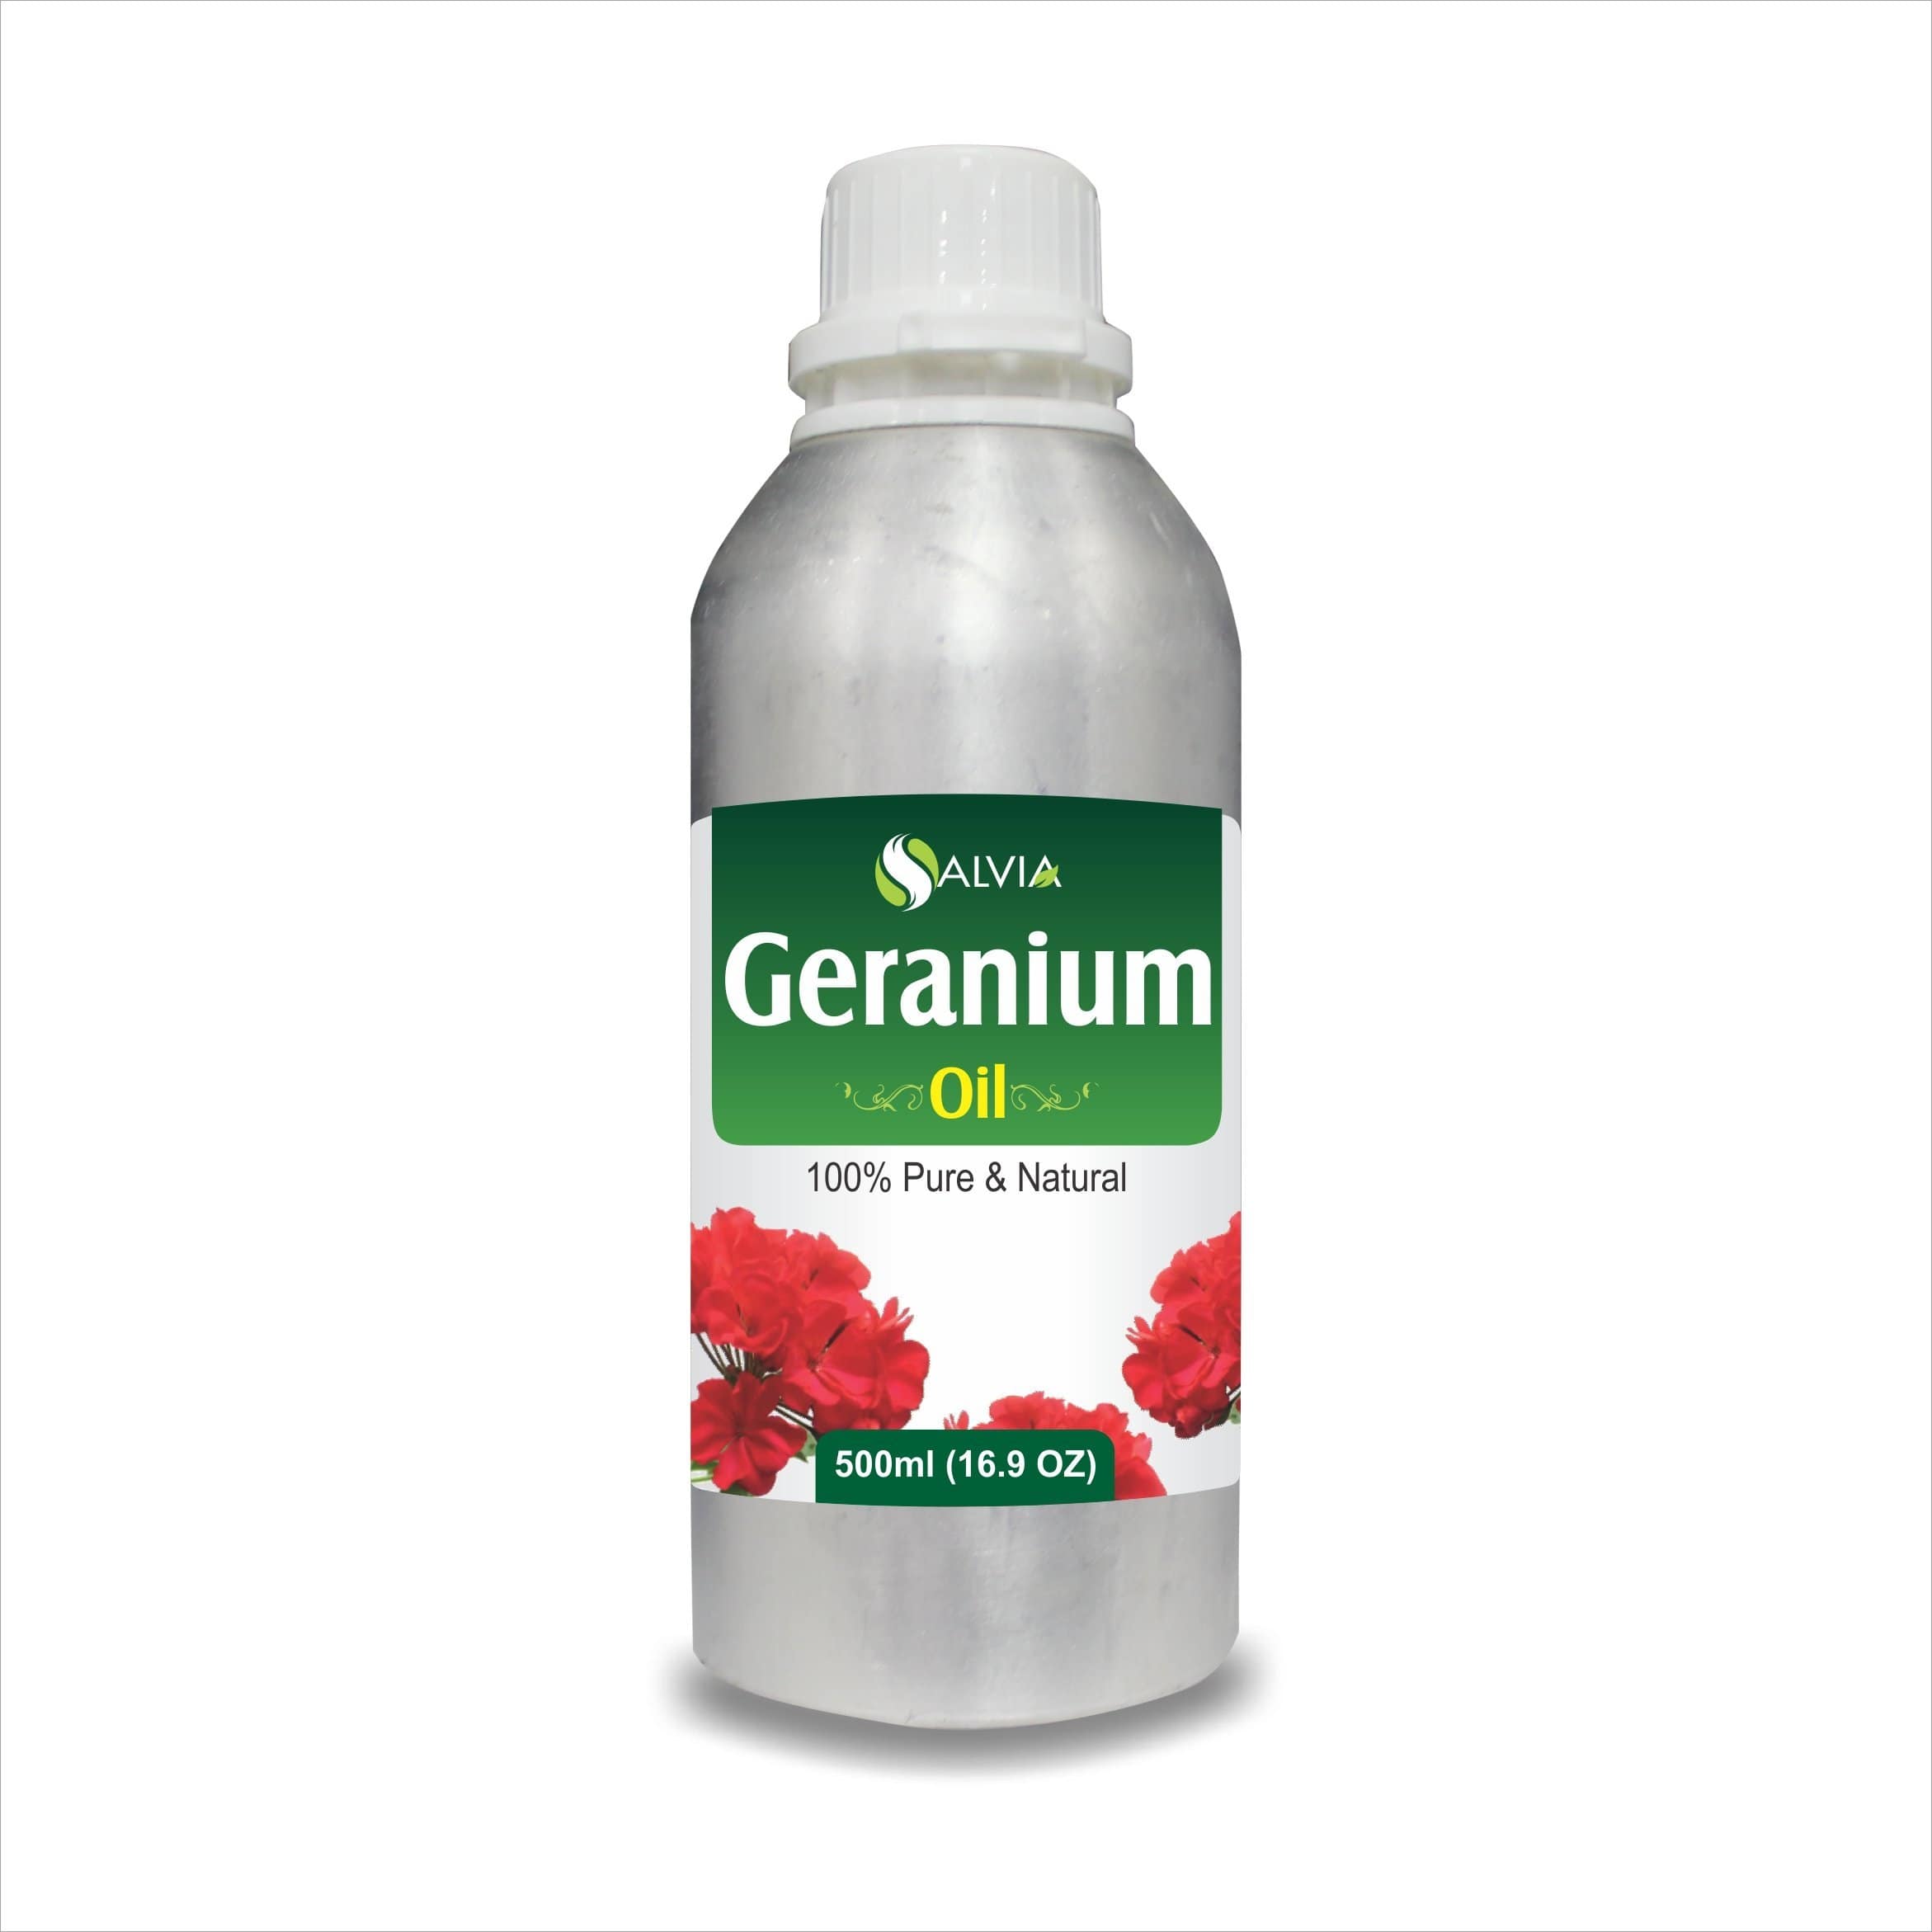 geranium oil for face